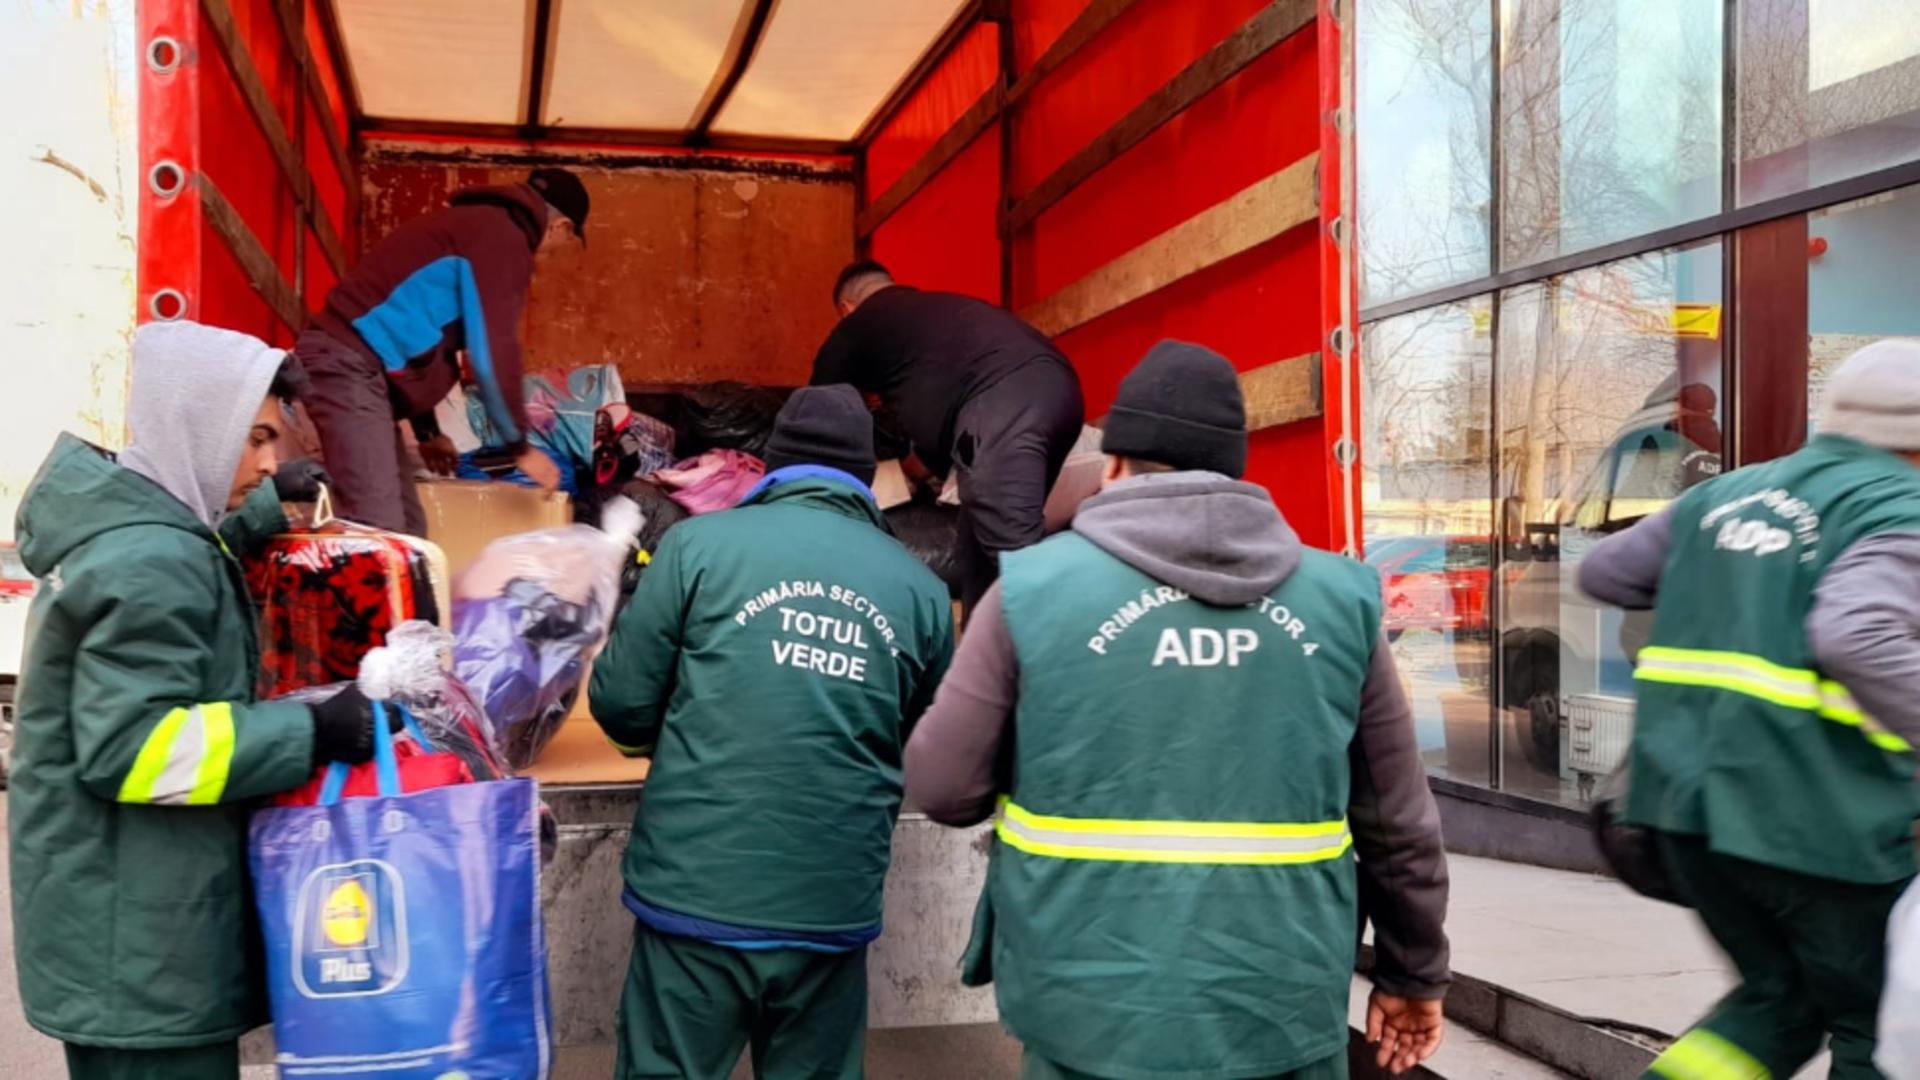 Campania umanitară de strângere de ajutoare pentru familiile afectate de cutremurele din Turcia, organizată de comunitatea Sectorului 4, s-a încheiat